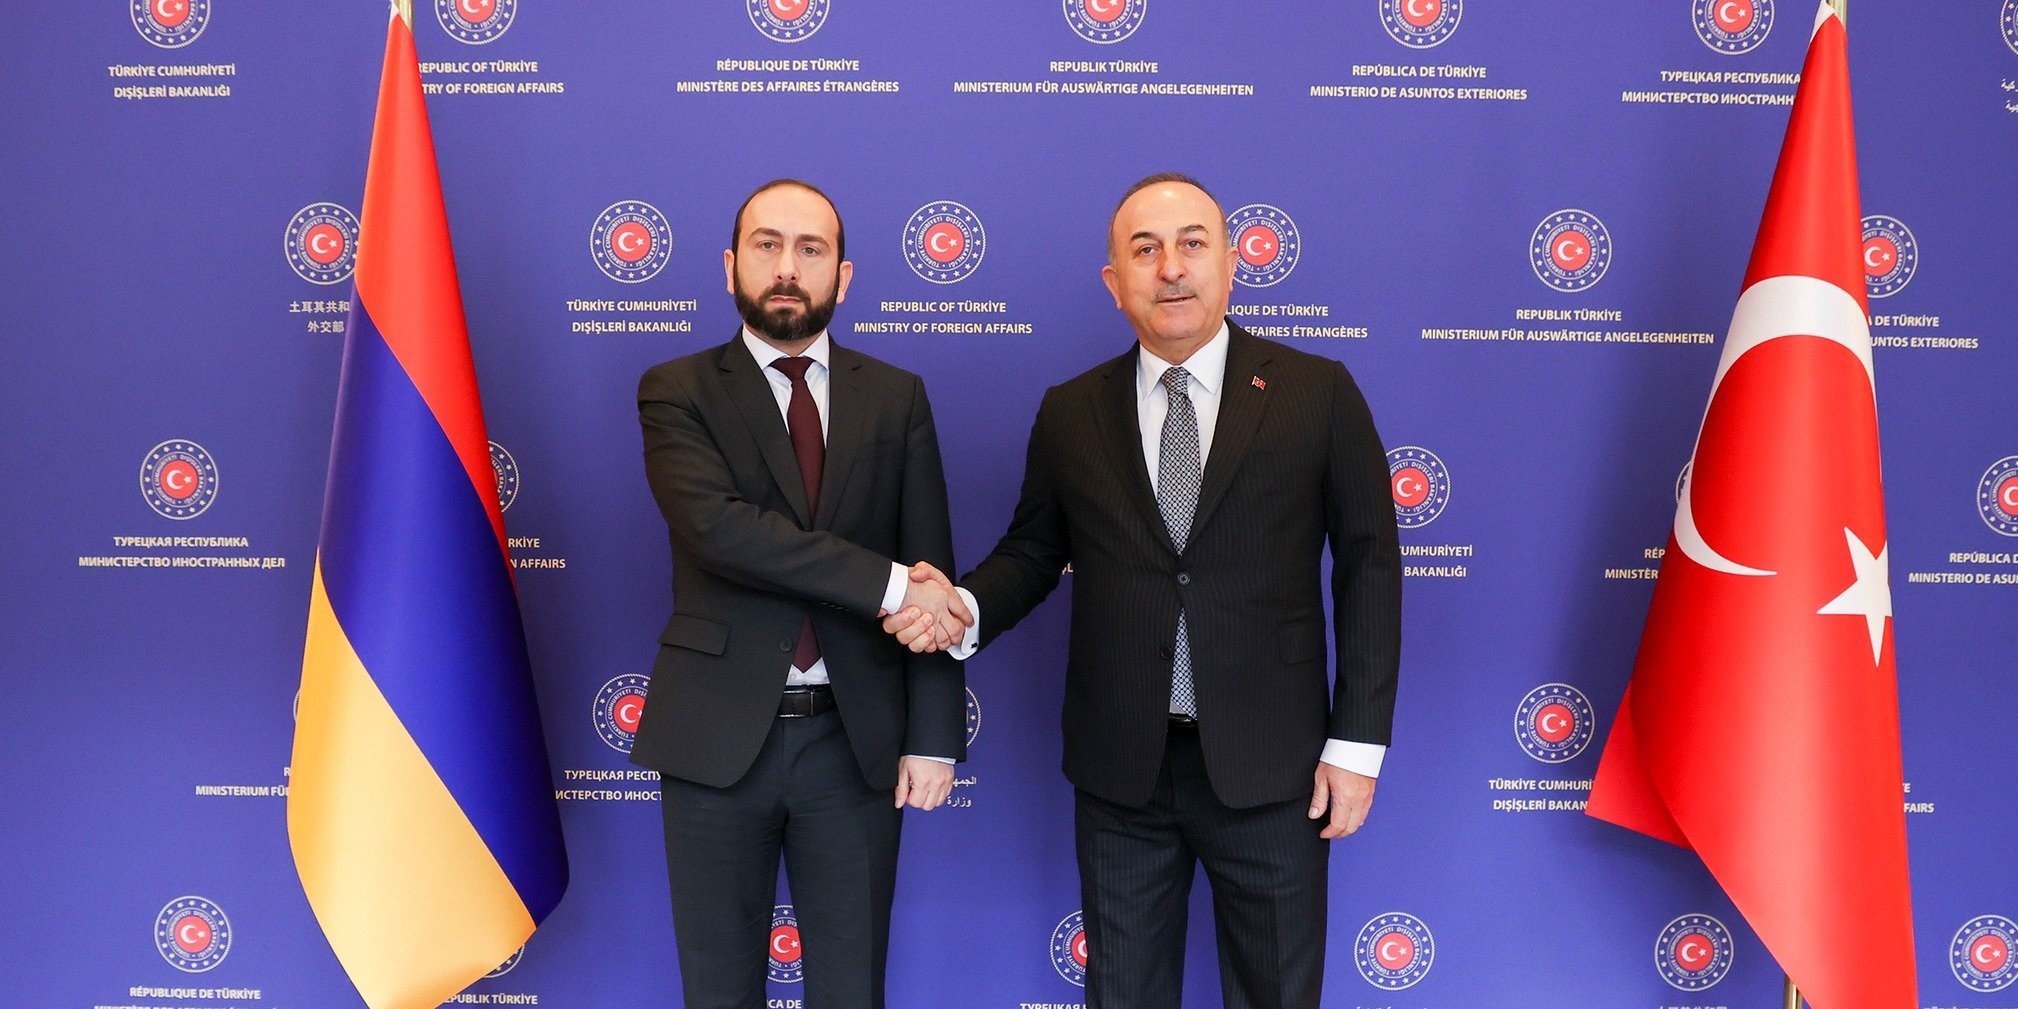 Անկարայում ավարտվել է Հայաստանի և Թուրքիայի ԱԳ նախարարների առանձնազրույցը, մեկնարկել է ընդլայնված կազմով հանդիպումը